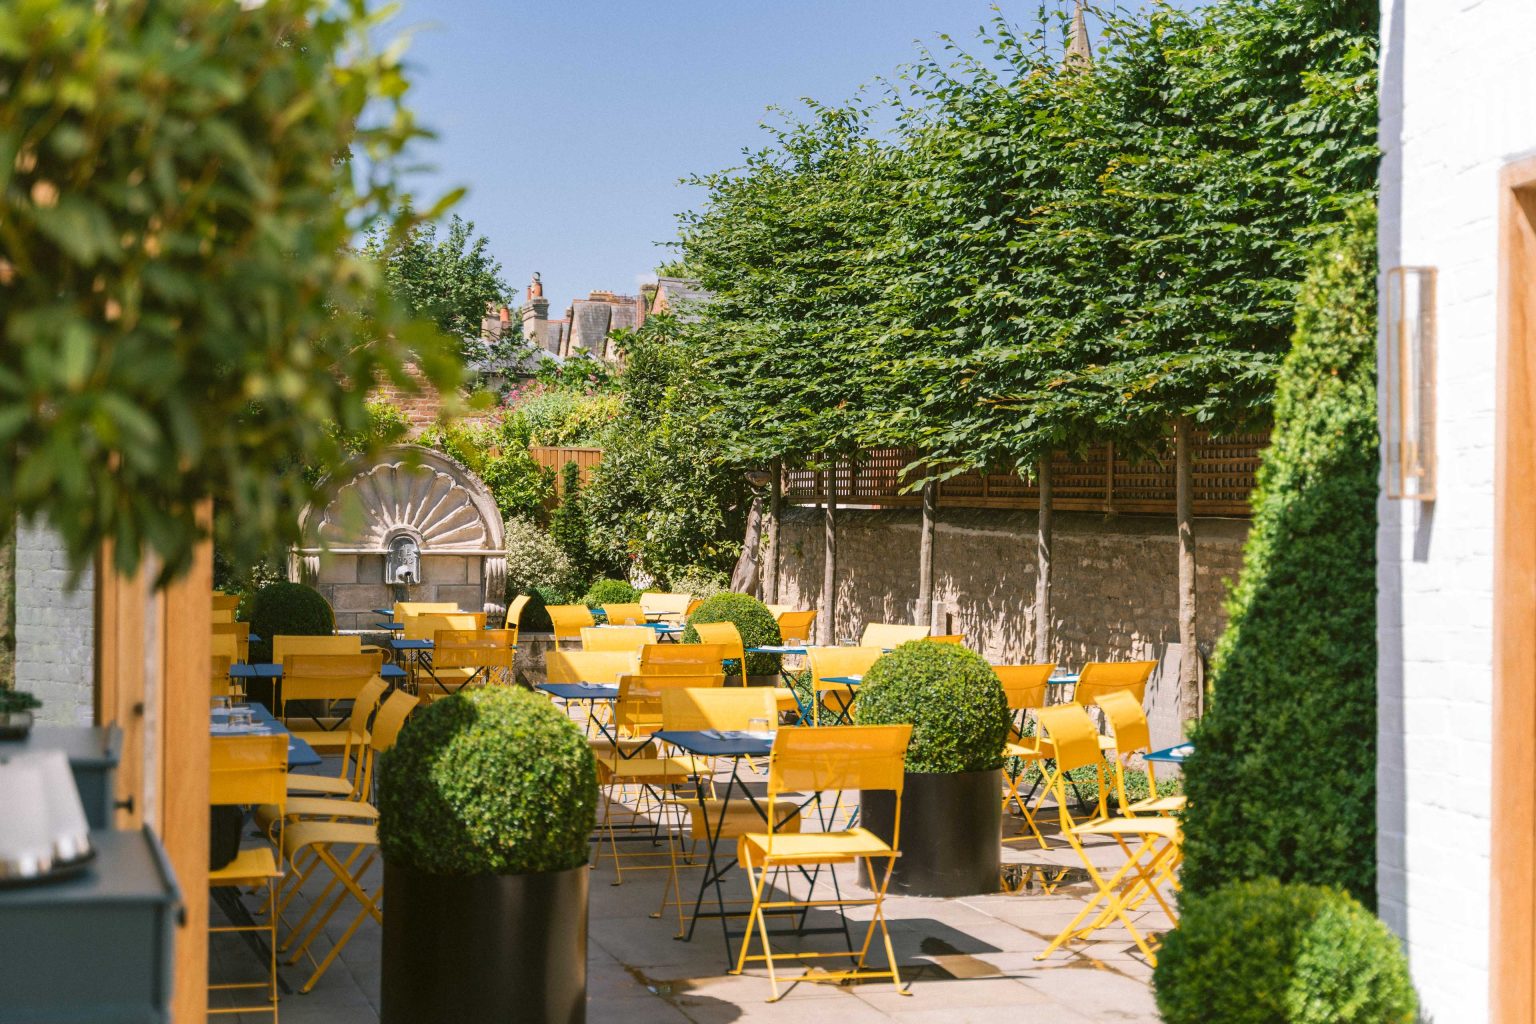 DSC00003 - 2022 - Gees Restaurant & Bar - Oxford - High res - Secret Garden Terrace Sun - Web Hero